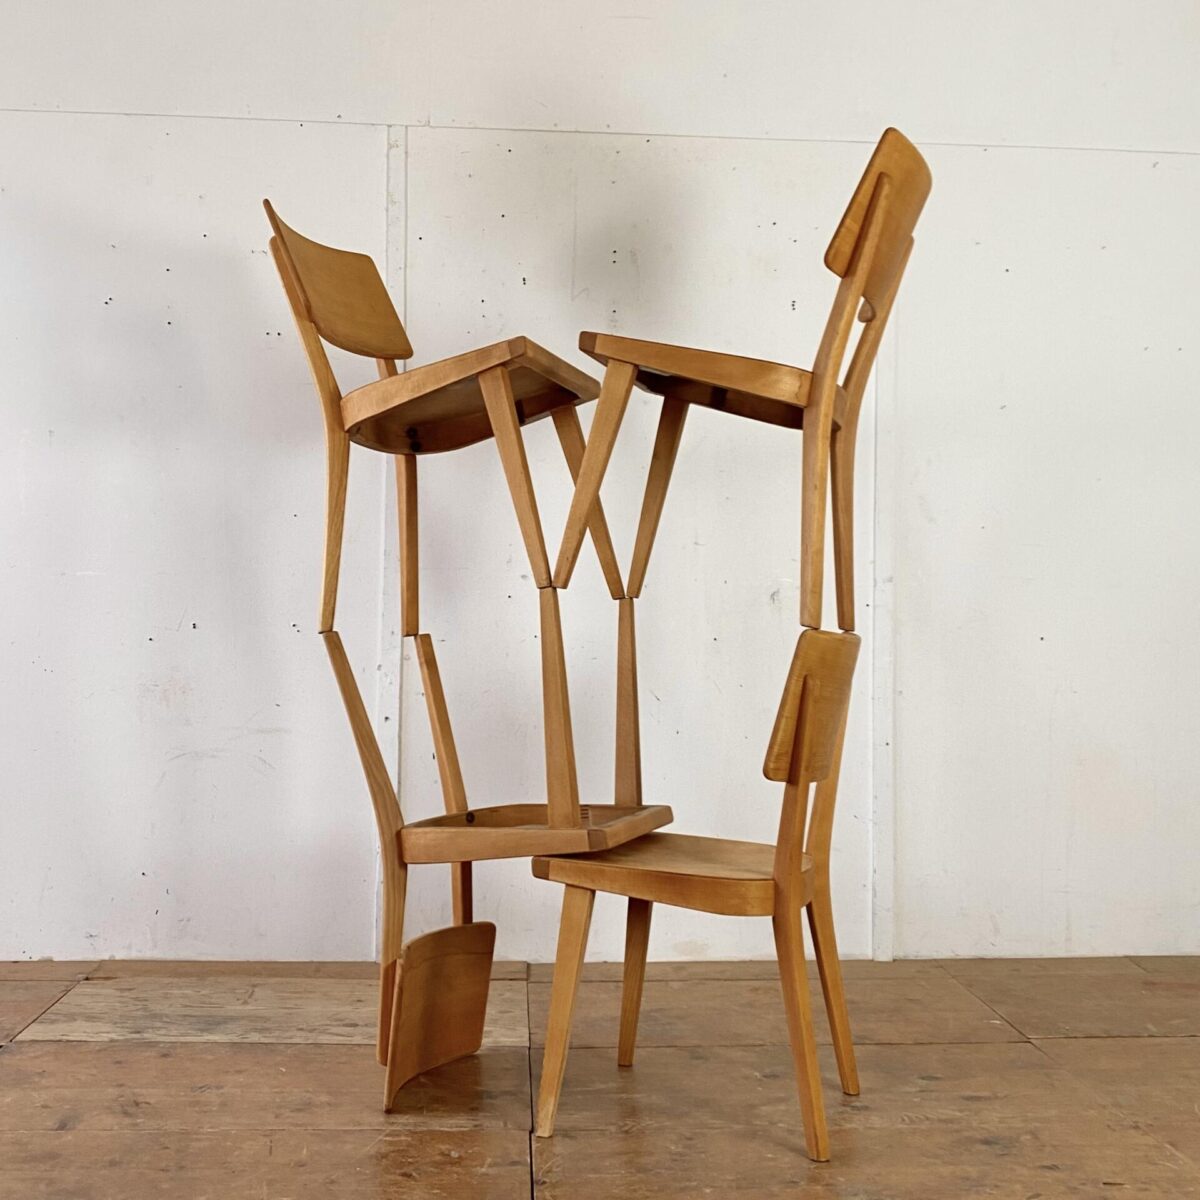 Deuxieme.shop swissdesign dinning chairs. 4er Set Beizenstühle. Die Stühle sind in stabilem Zustand, die Holz Oberfläche ist geschliffen und geölt. Warme matte Ausstrahlung mit leichter Alterspatina. 